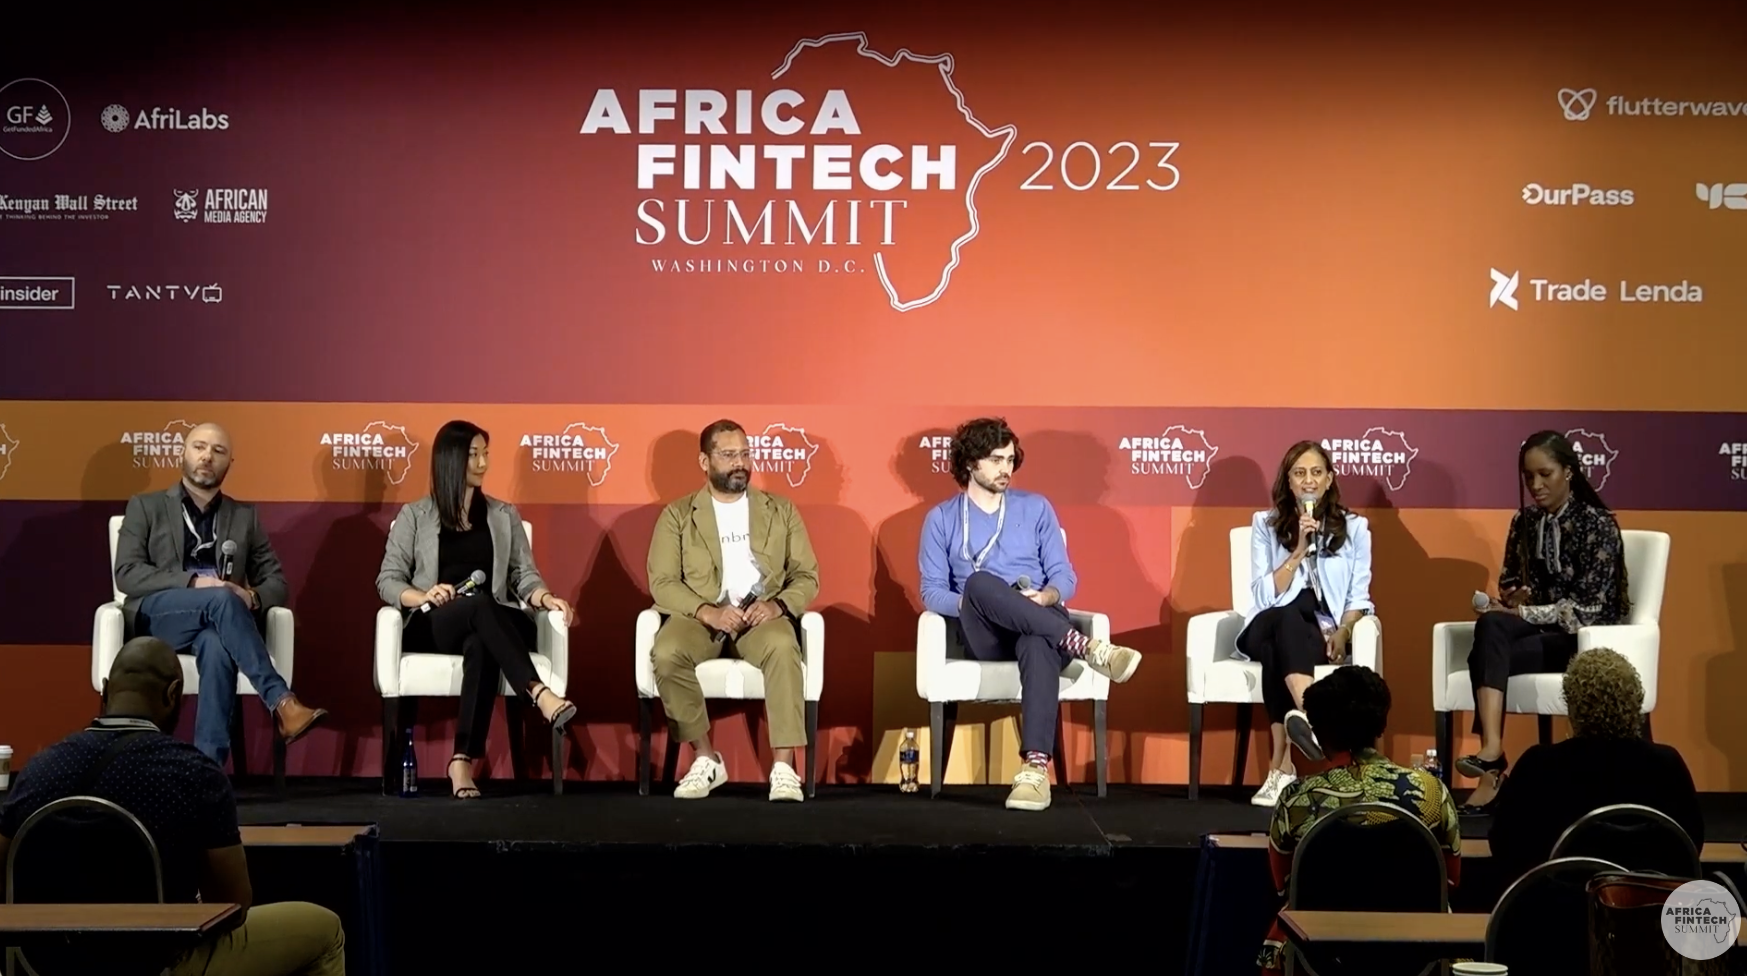 Apr 2023 Africa Fintech Summit